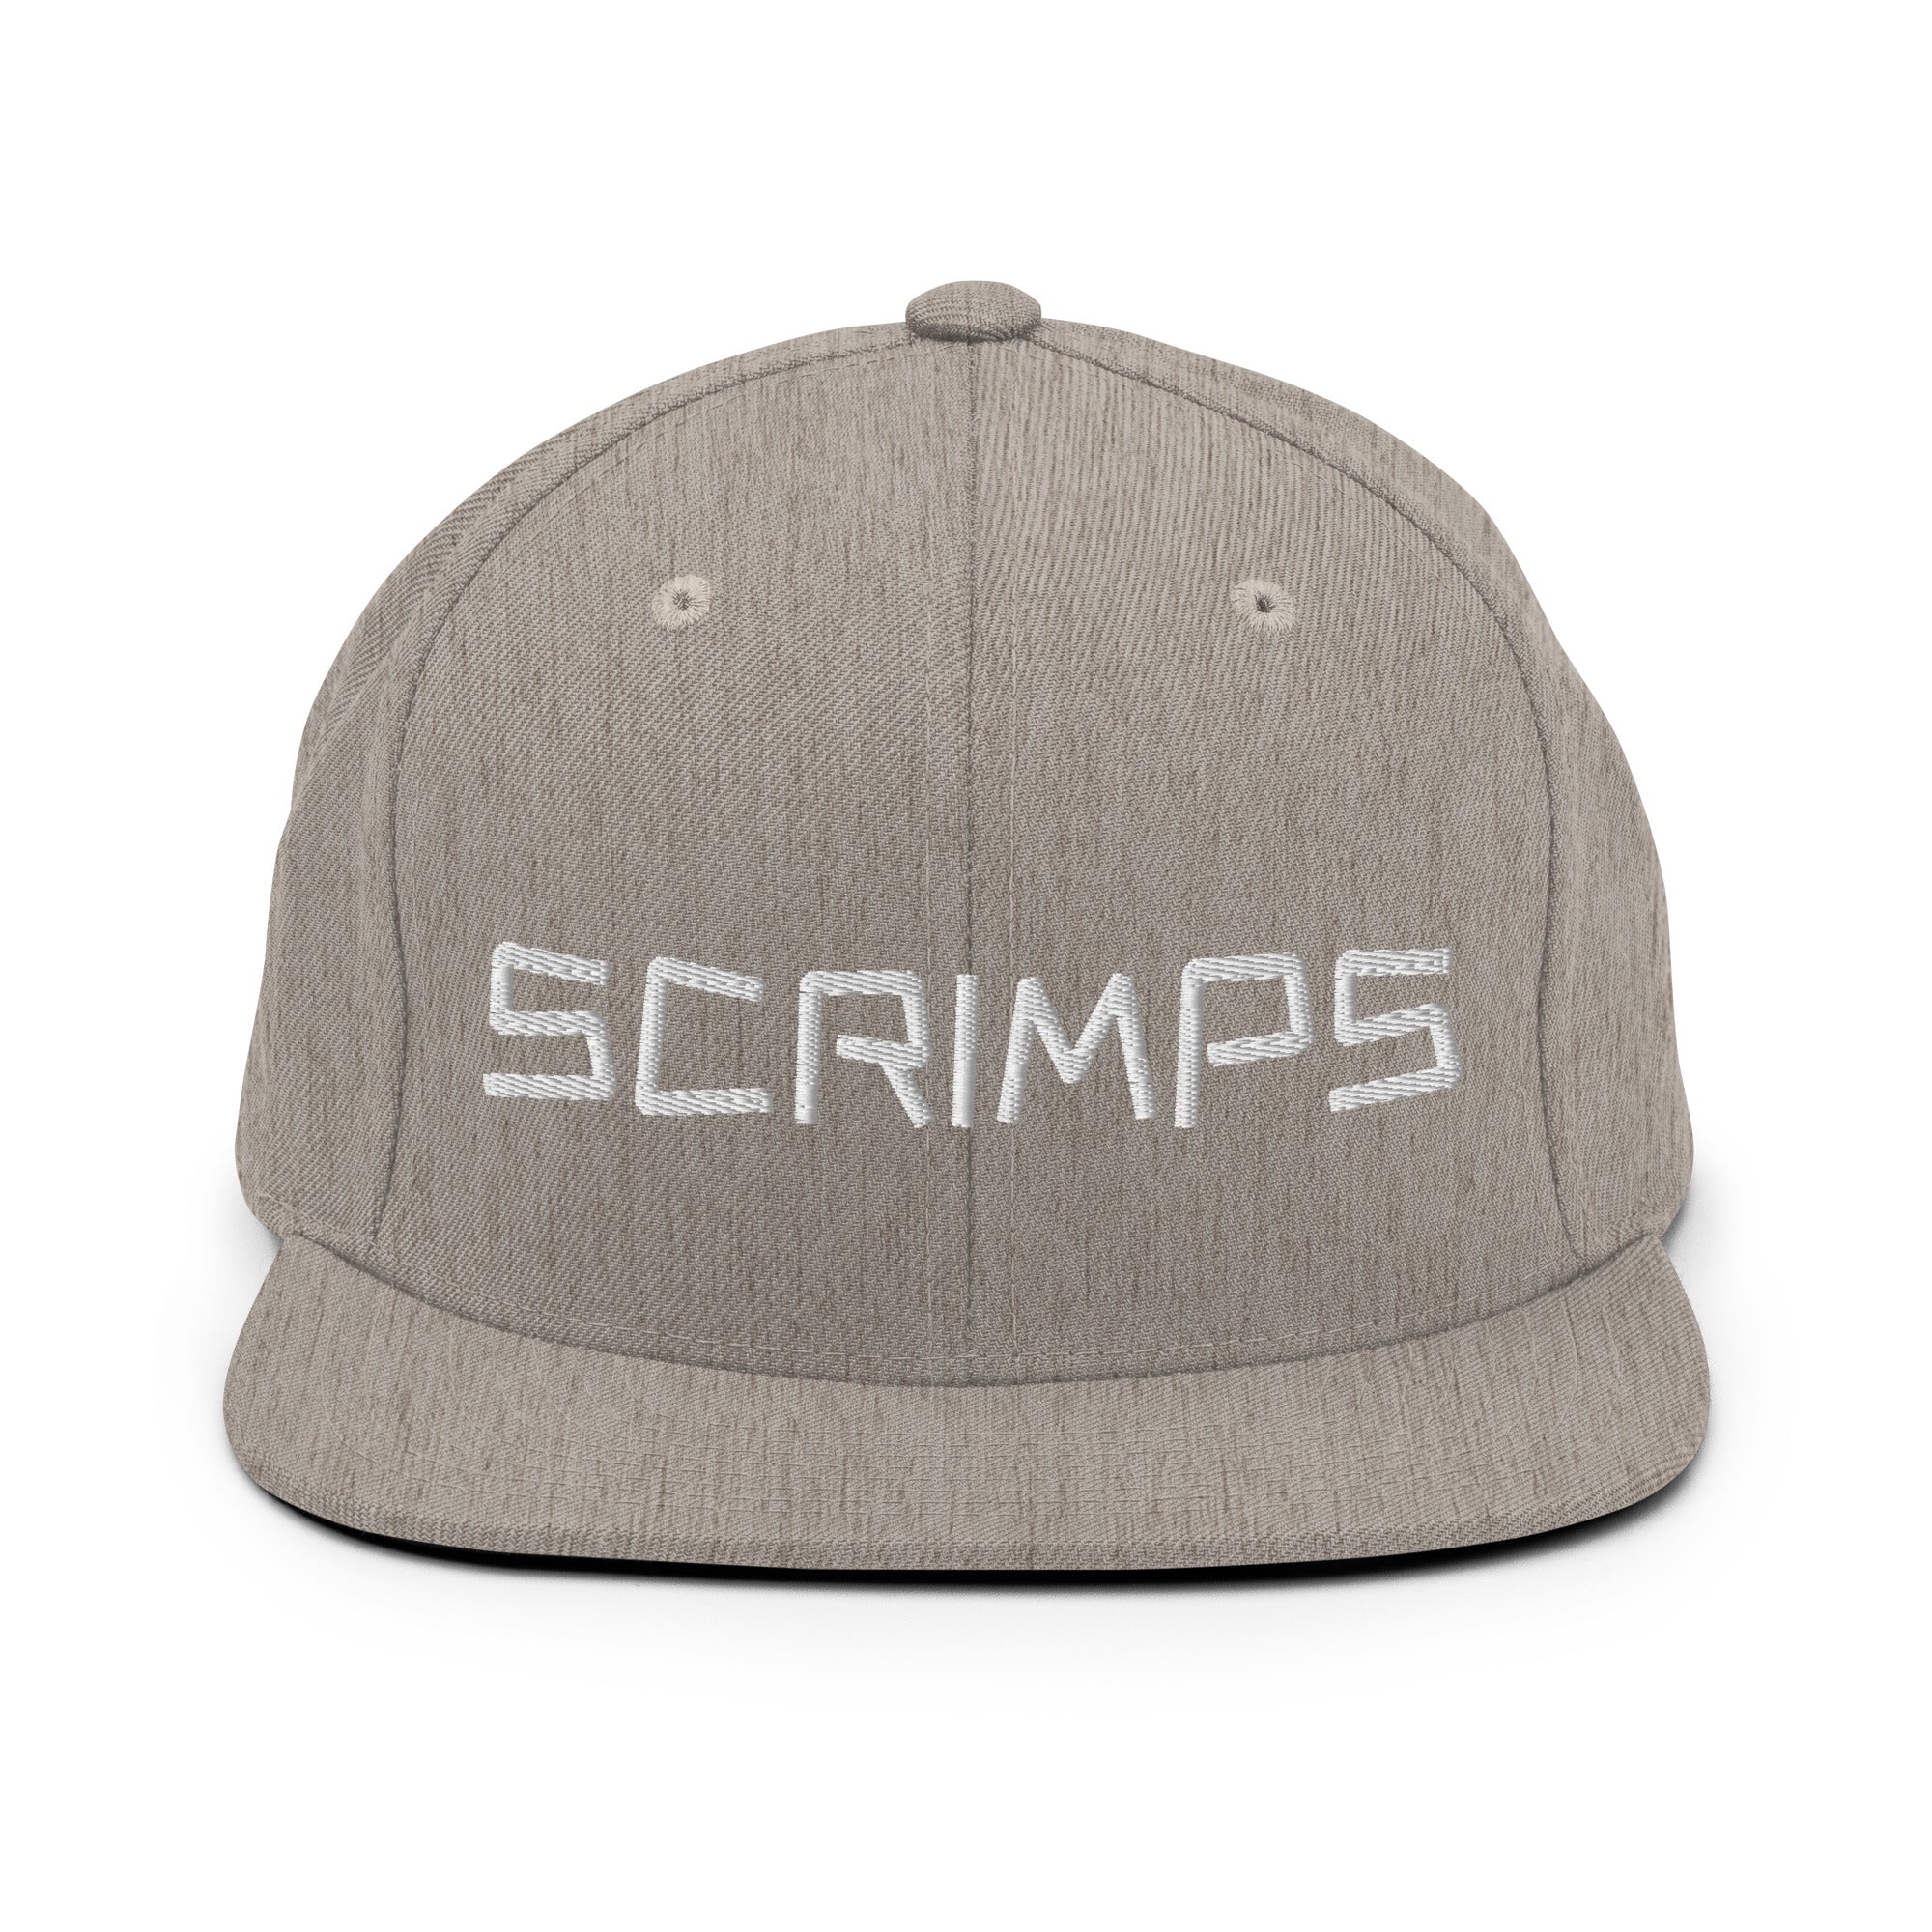 Scrimps Snapback